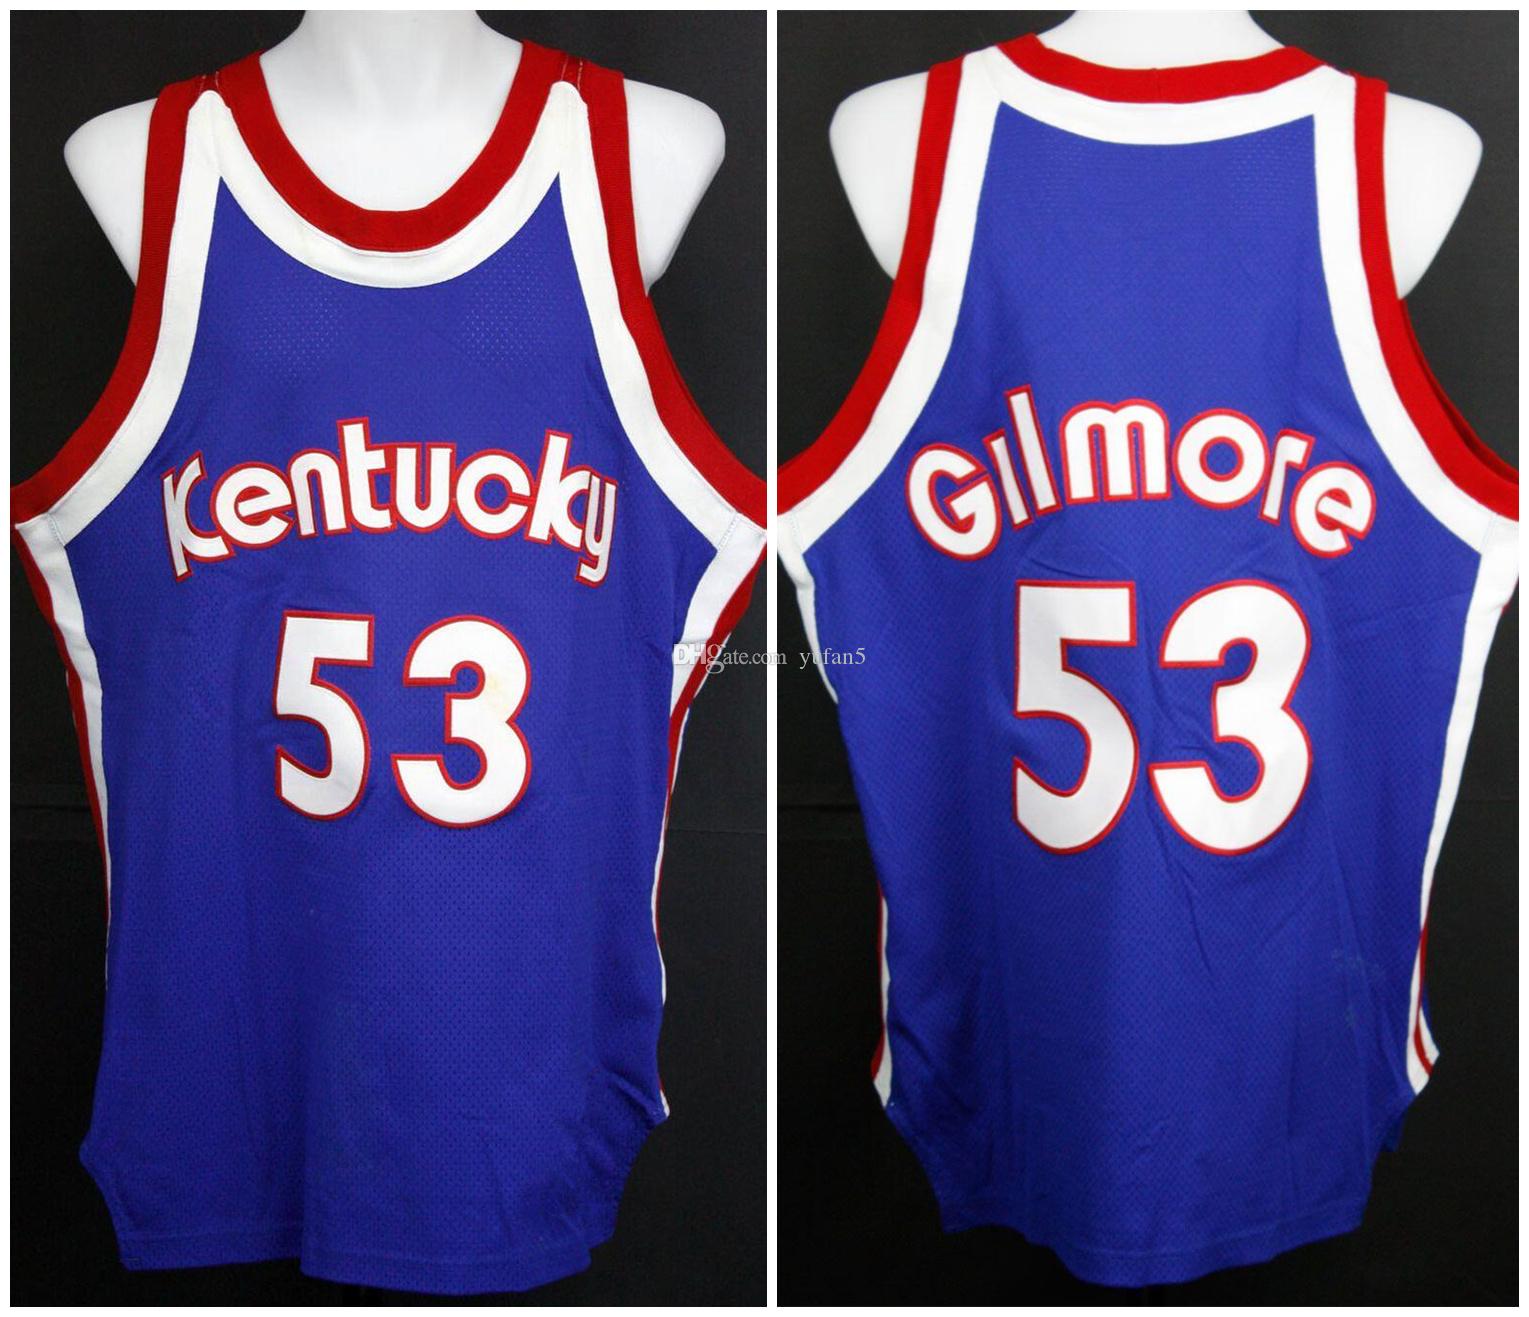 Artis Gilmore #53 Överstar Kentucky RETRO TRÖJOR 1974-75 Retro baskettröja herrsydda anpassade tröjor med namn